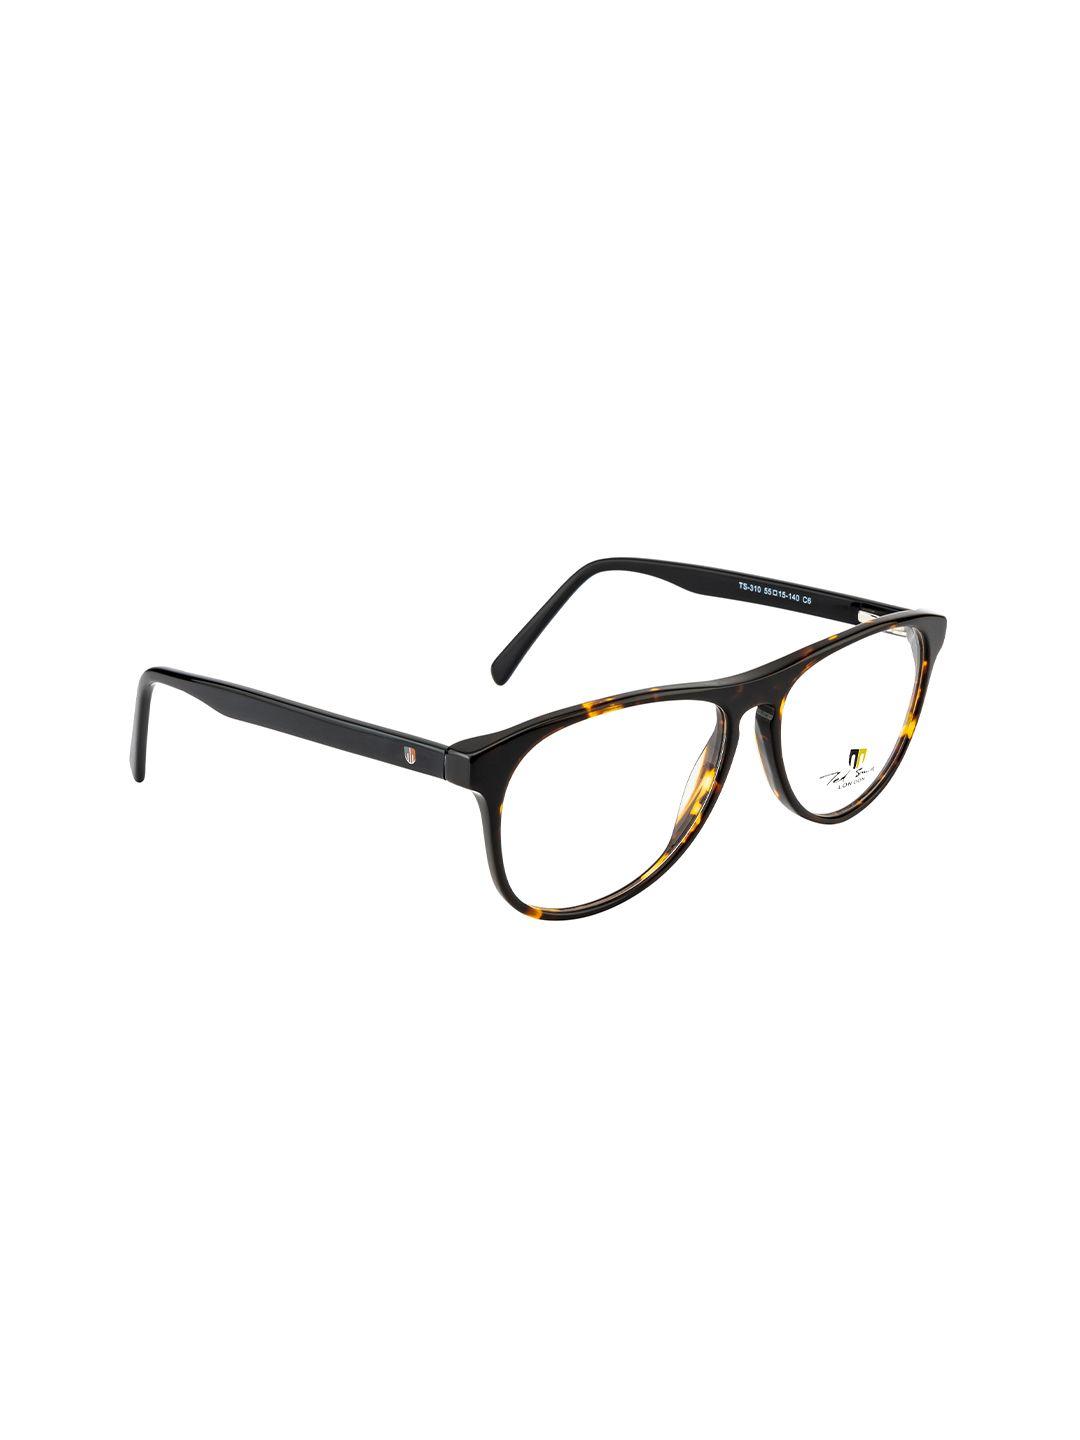 ted smith unisex brown abstract full rim wayfarer frames eyeglasses